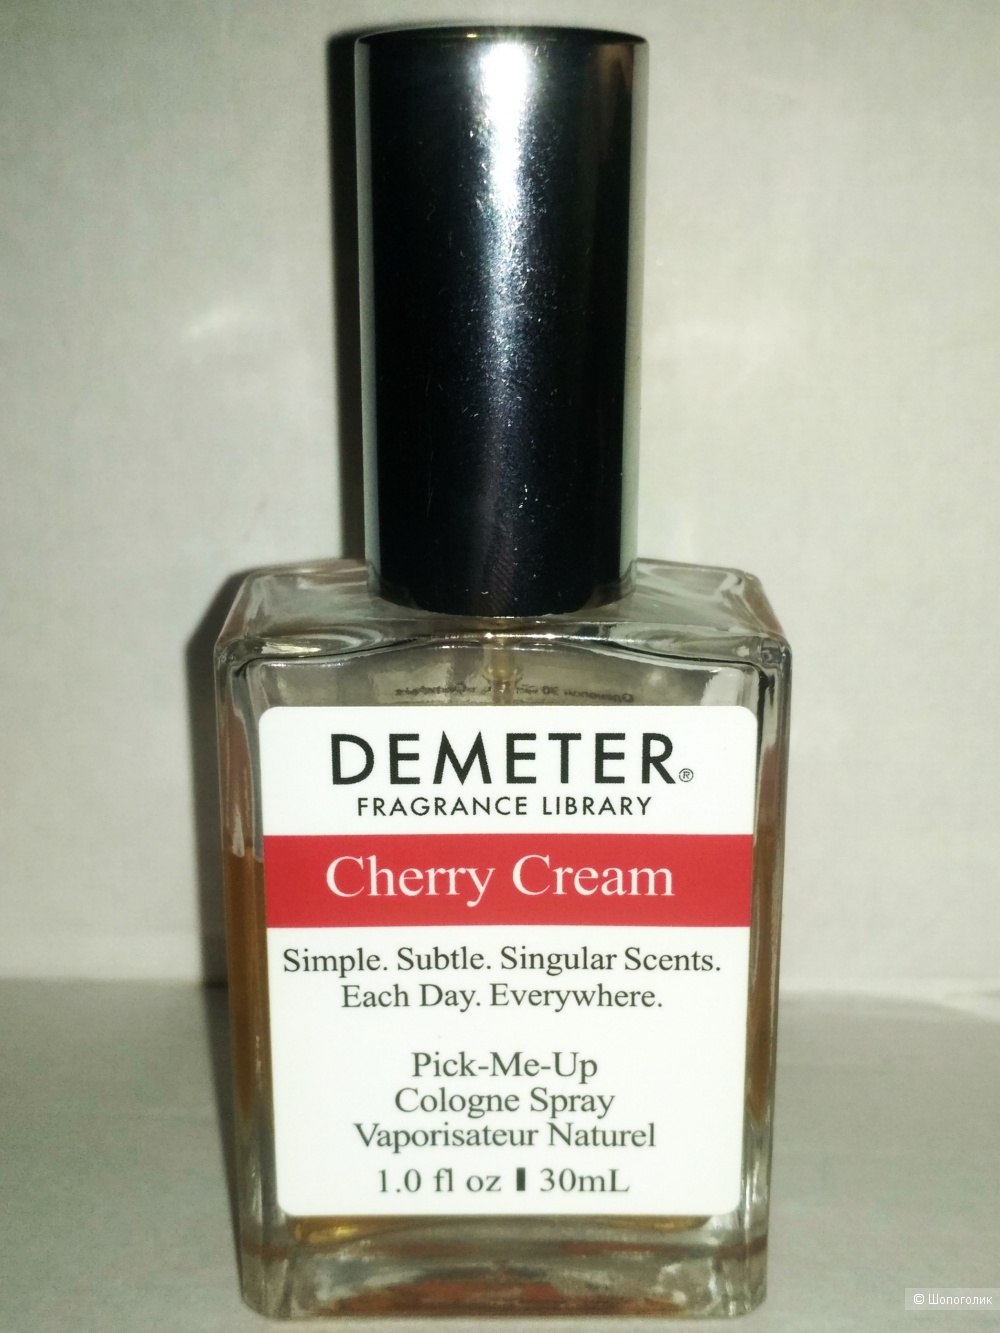 Demeter Cherry cream